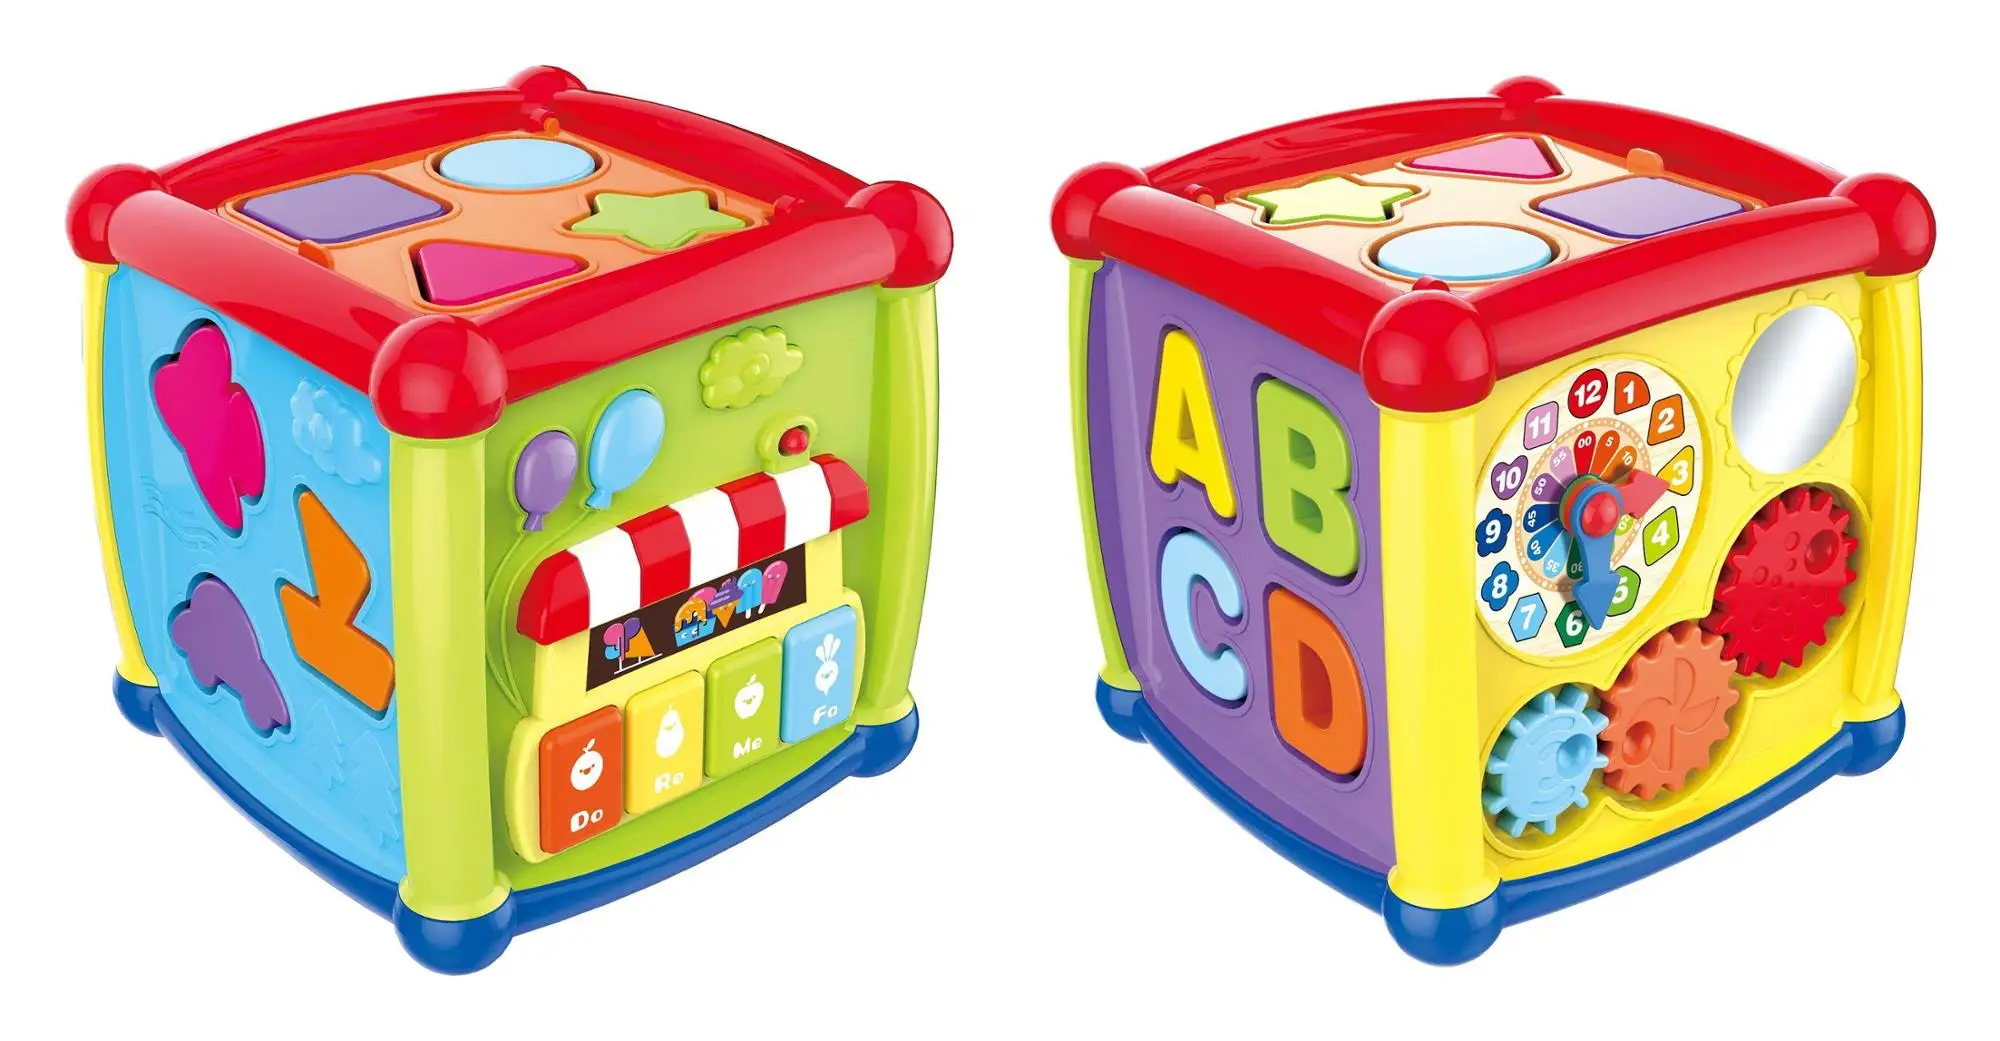 Cube детские. Развивающий куб для детей. Игра музыкальный кубик для детей. Куб Fancy Baby сортер. Сортер ABC куб с функциями.